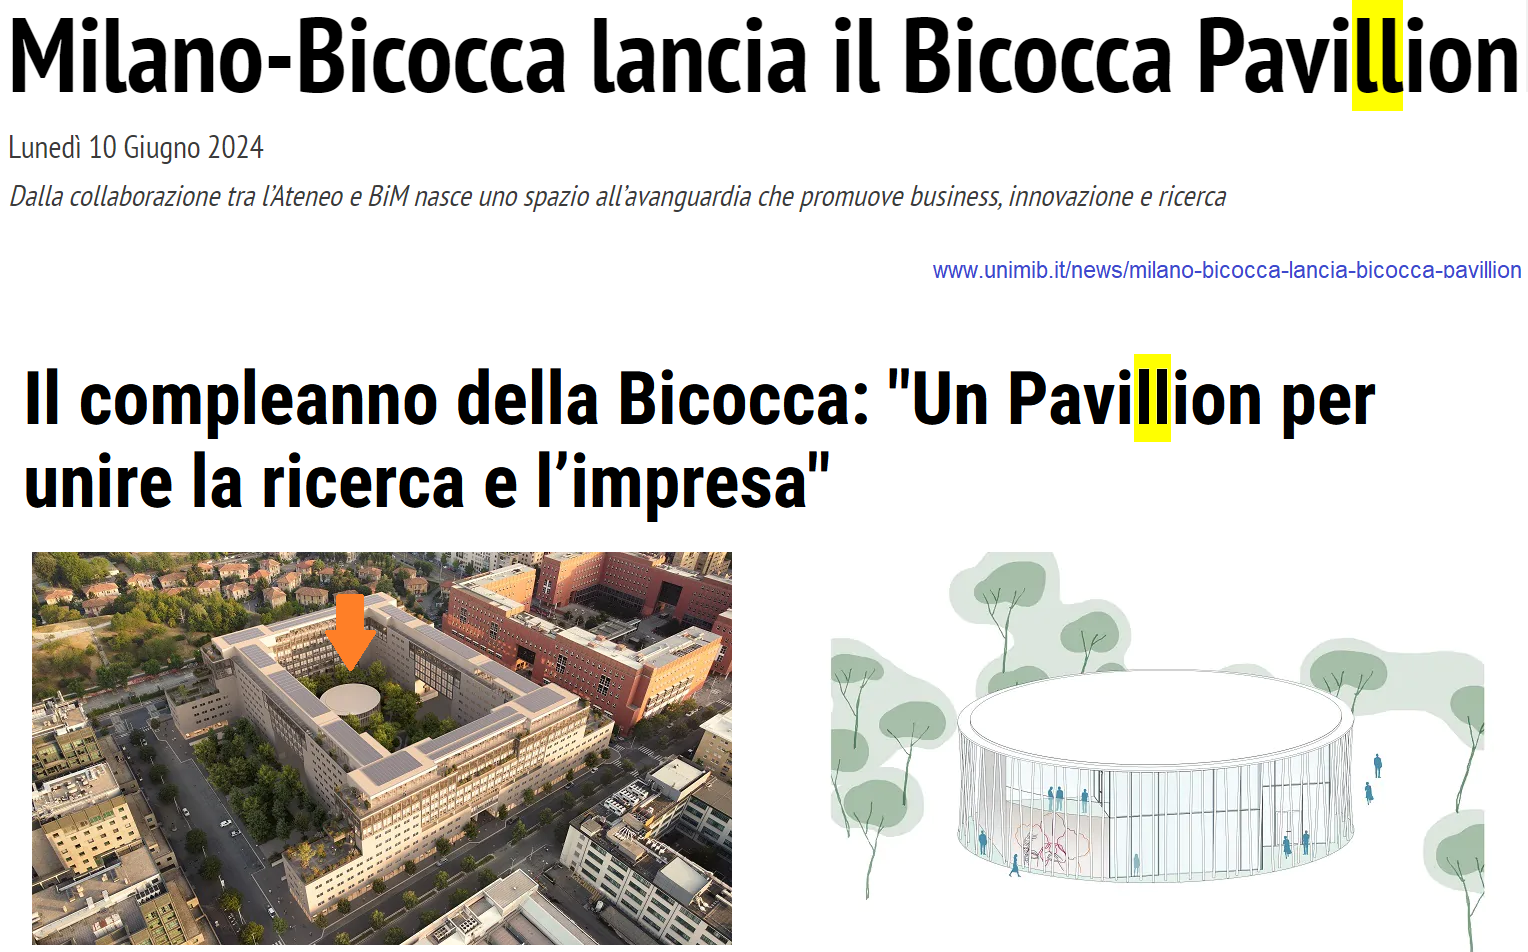 Immagini e titoli: 1 Milano-Bicocca lancia il Bicocca Pavillion; 2 Il compleanno della Bicocca: “Un Pavillion per unire la ricerca e l’impresa”